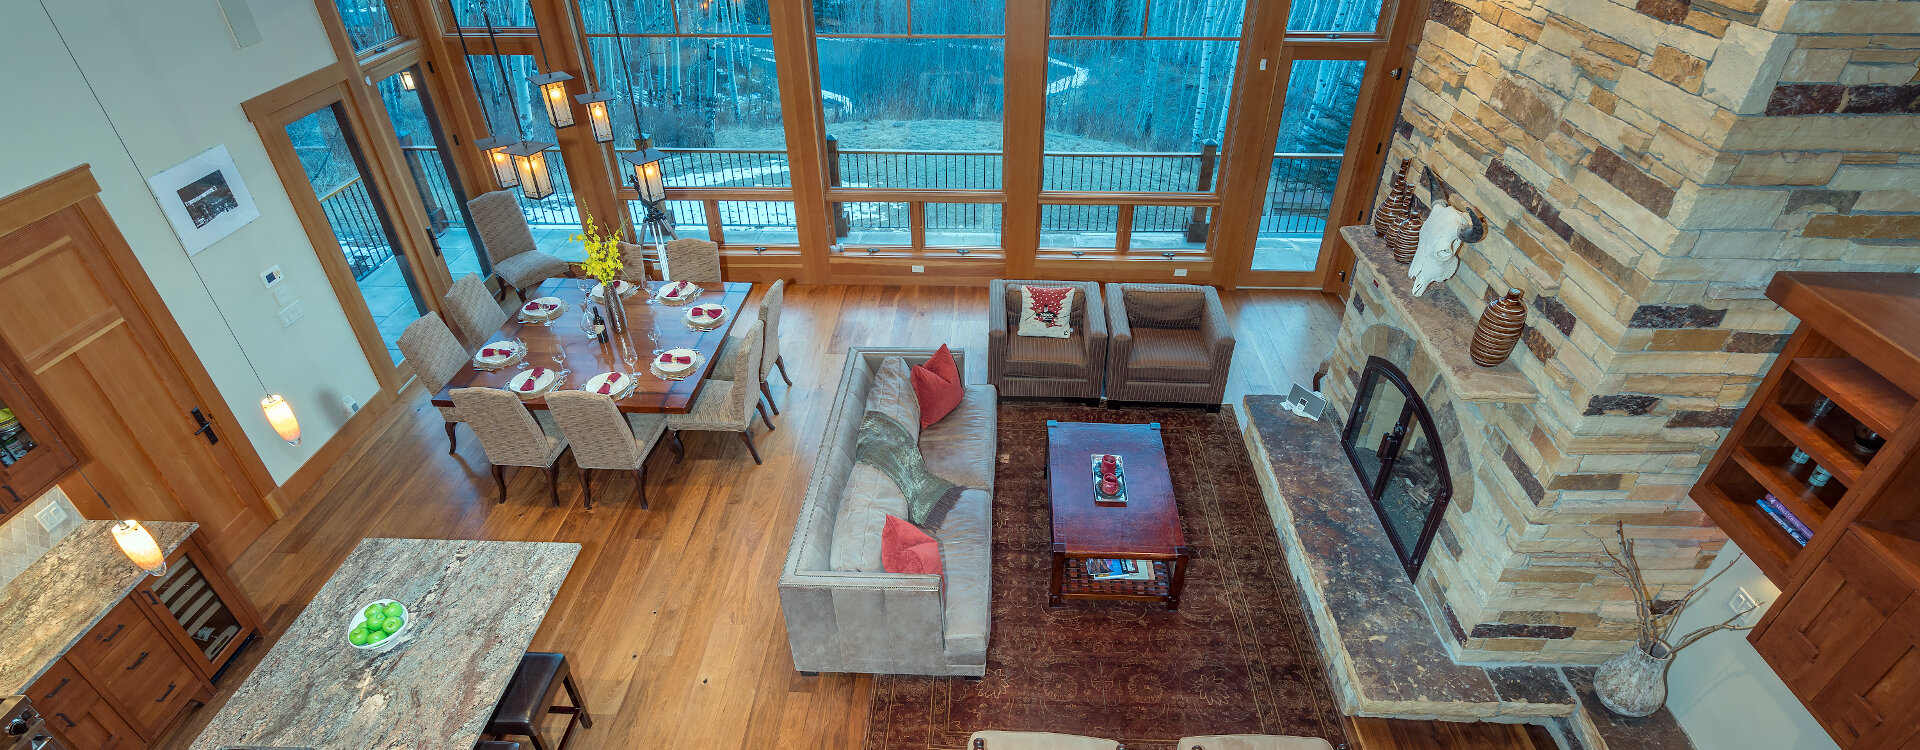 10-Telluride-Grand-Vista-Living-Room-Aerial